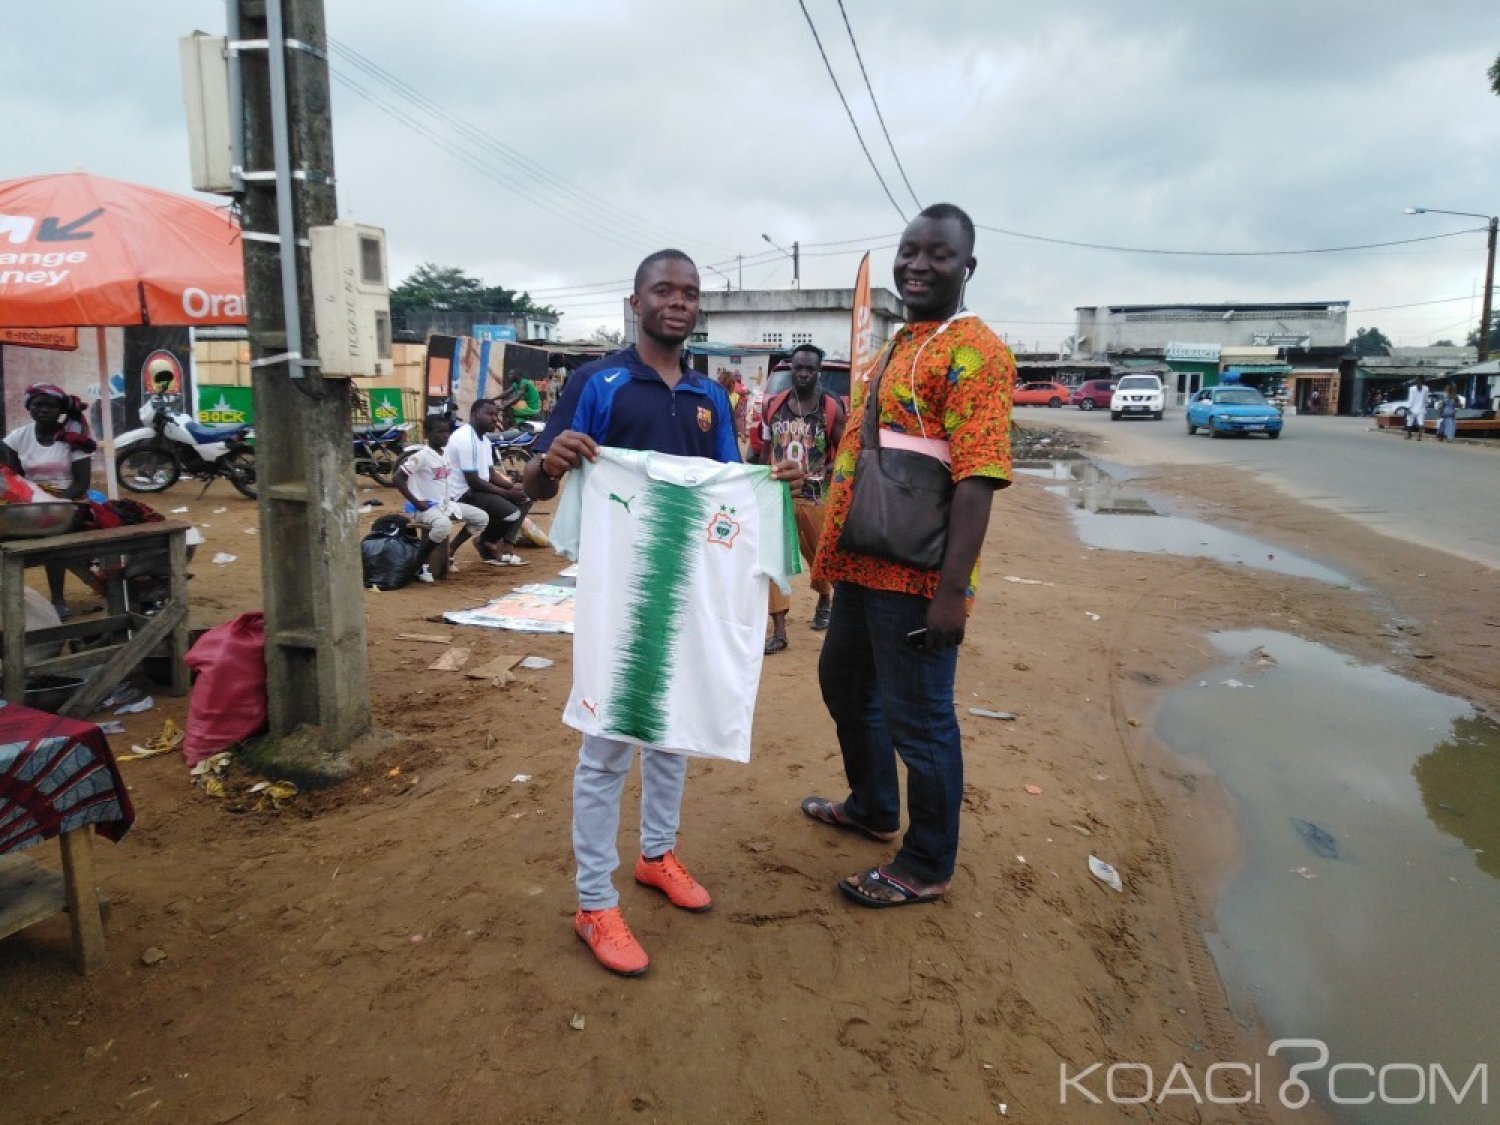 Côte d'Ivoire: À quelques heures du match contre le Maroc, les ventes de maillots et accessoires se multiplient